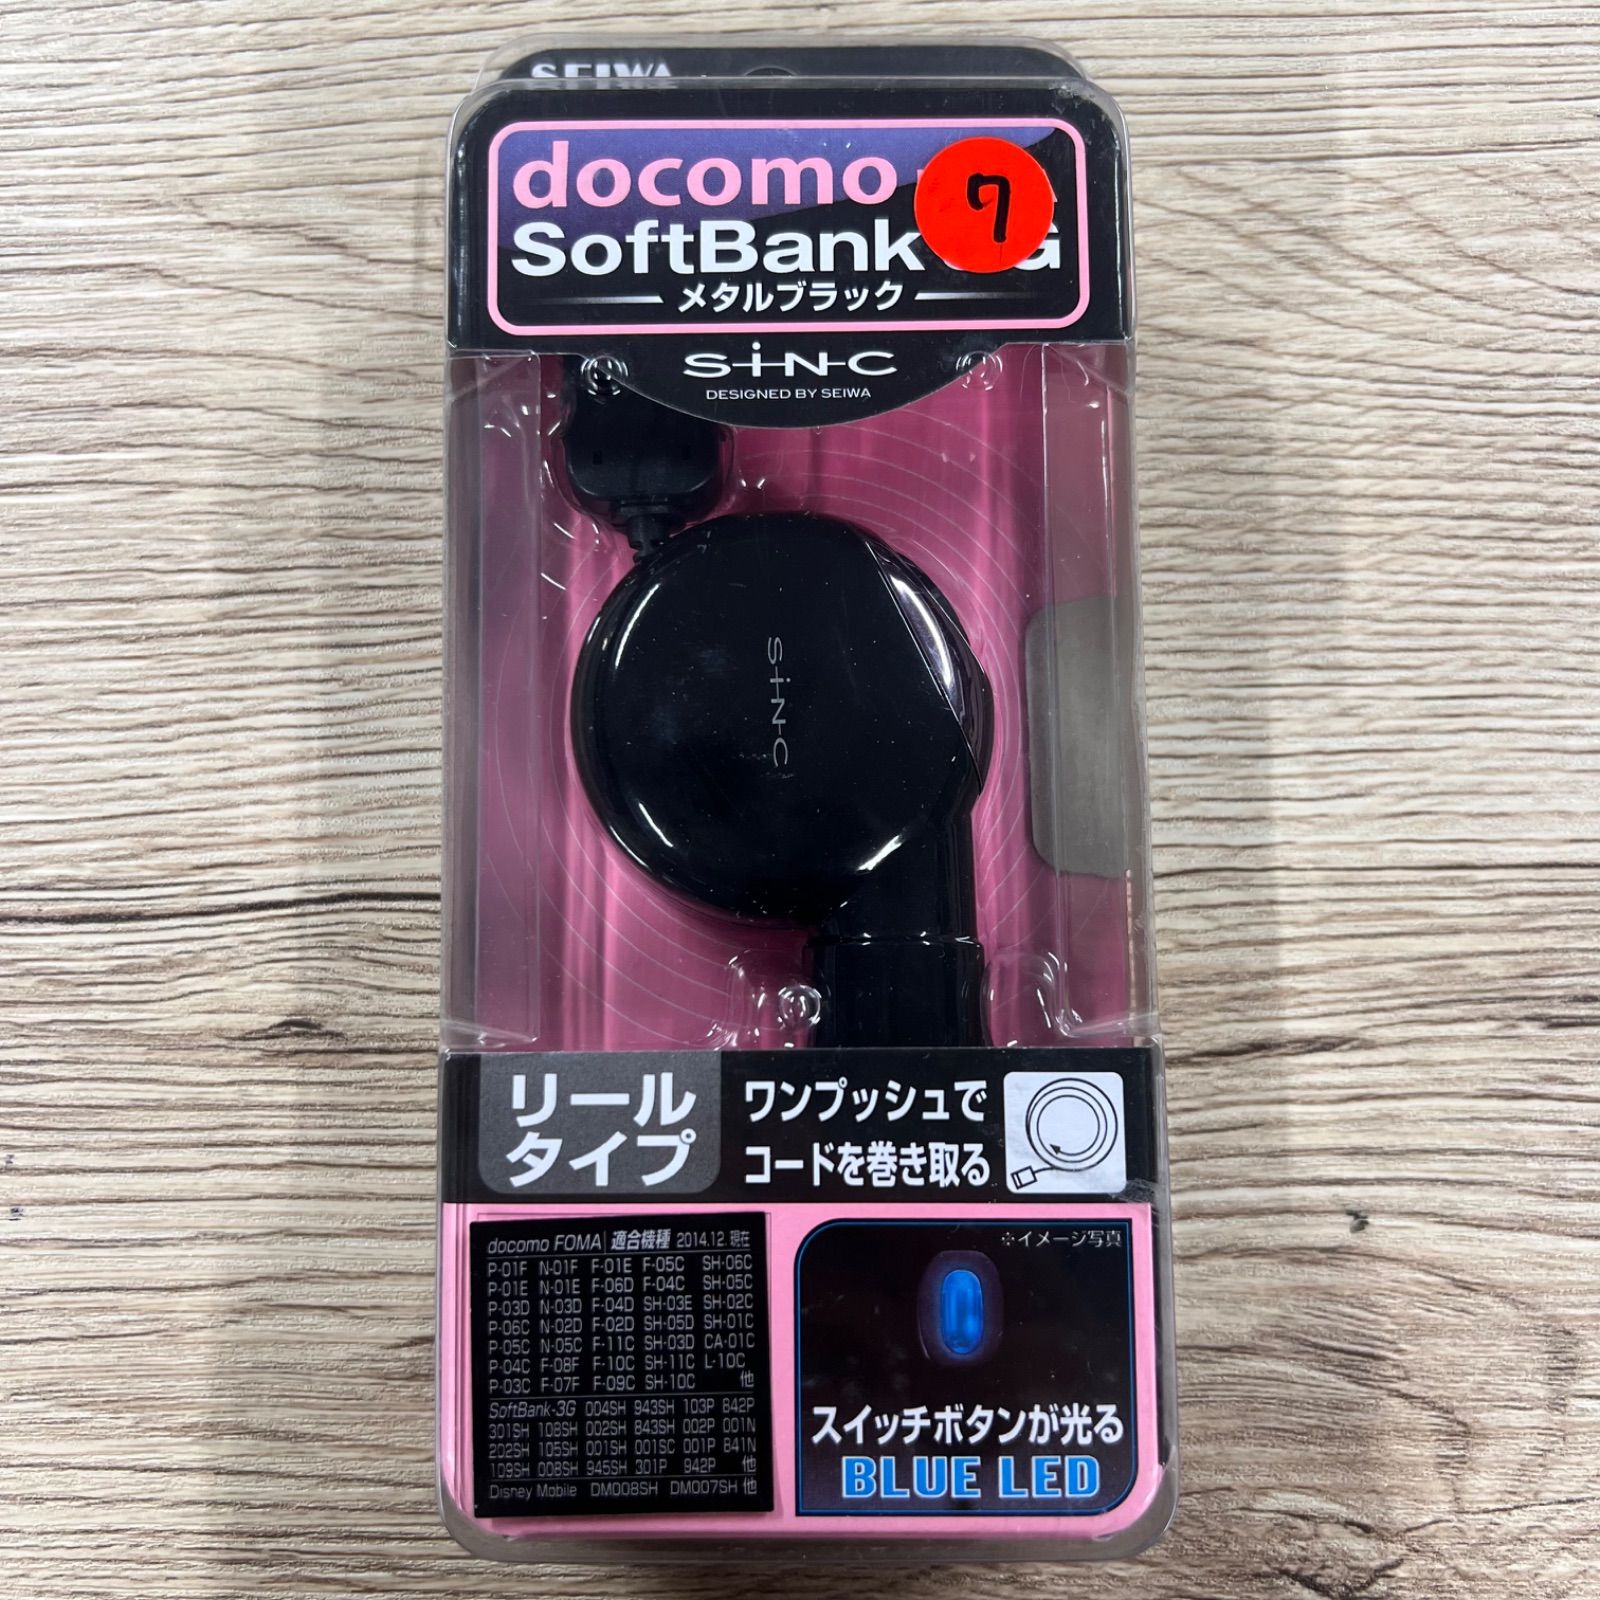 7【新品未使用】車載充電器 docomo FOMA softbank 3G 対応